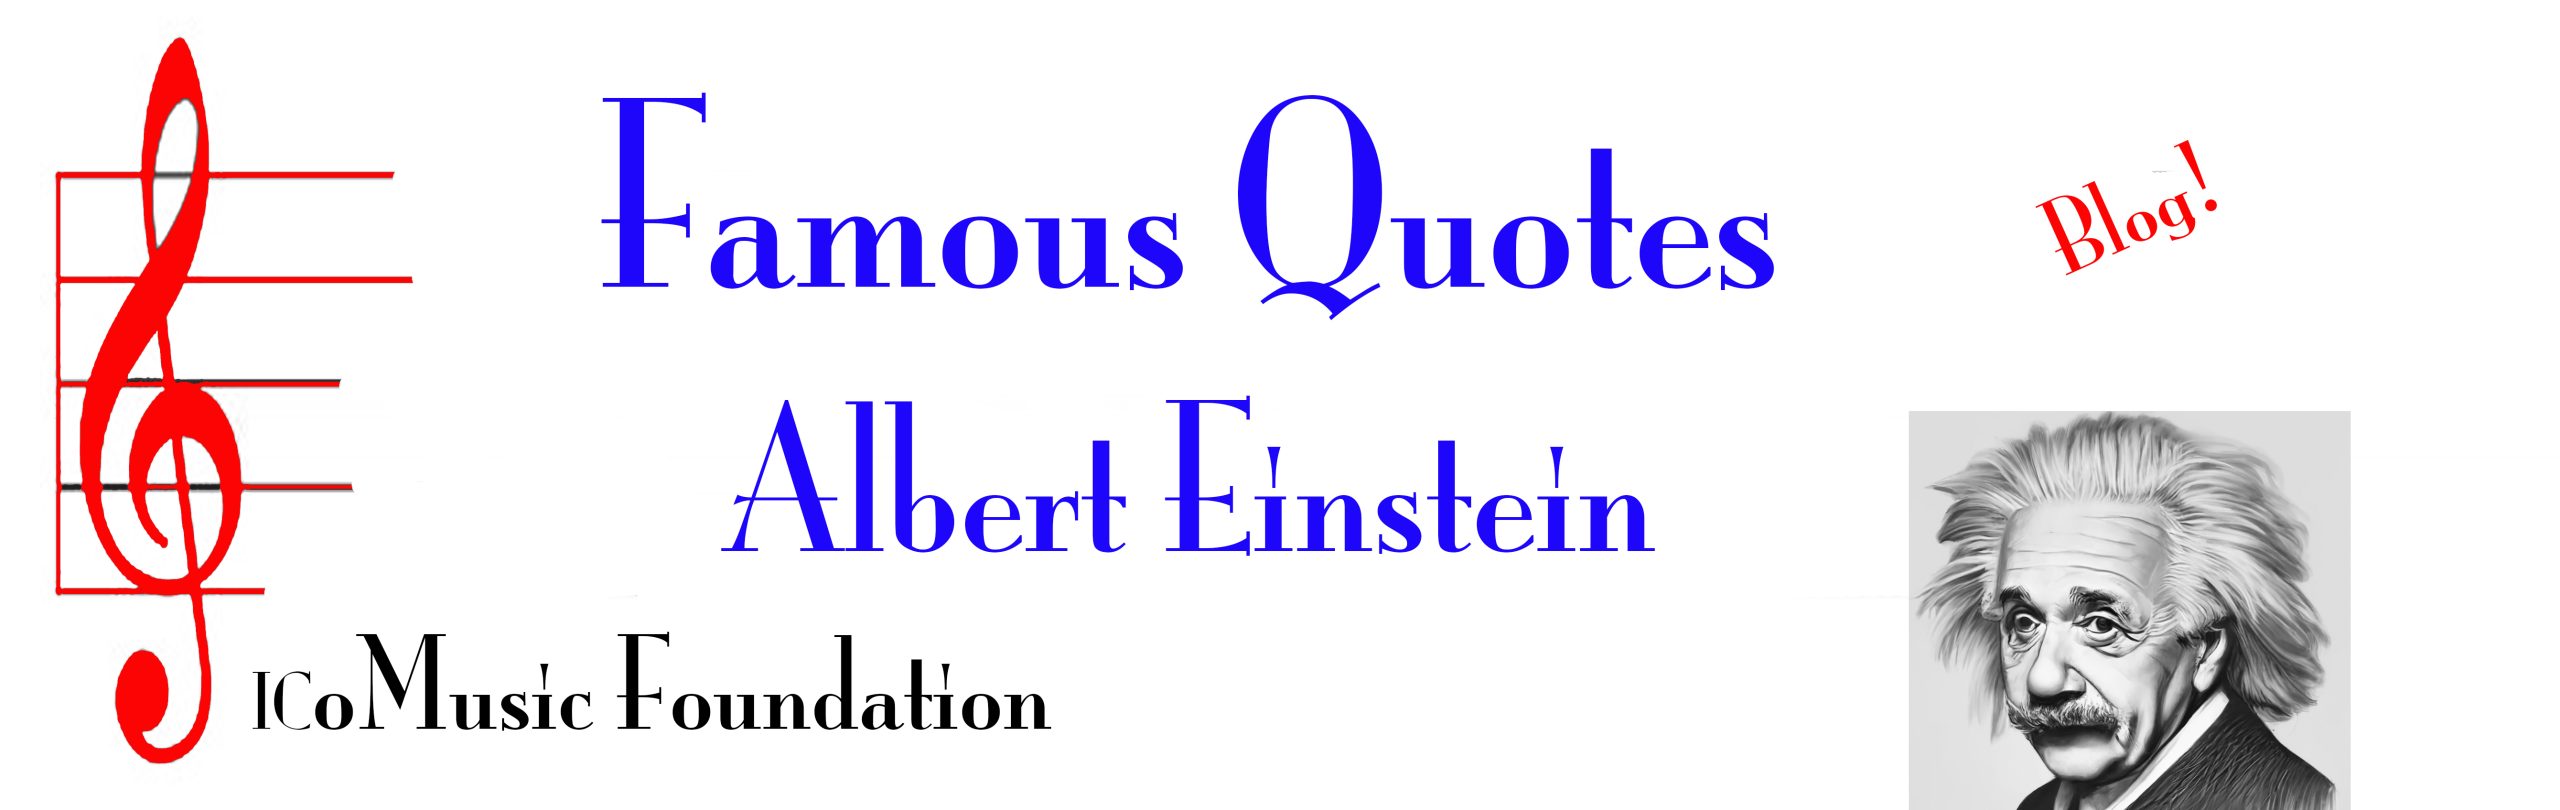 Albert Einstein Blog Banner